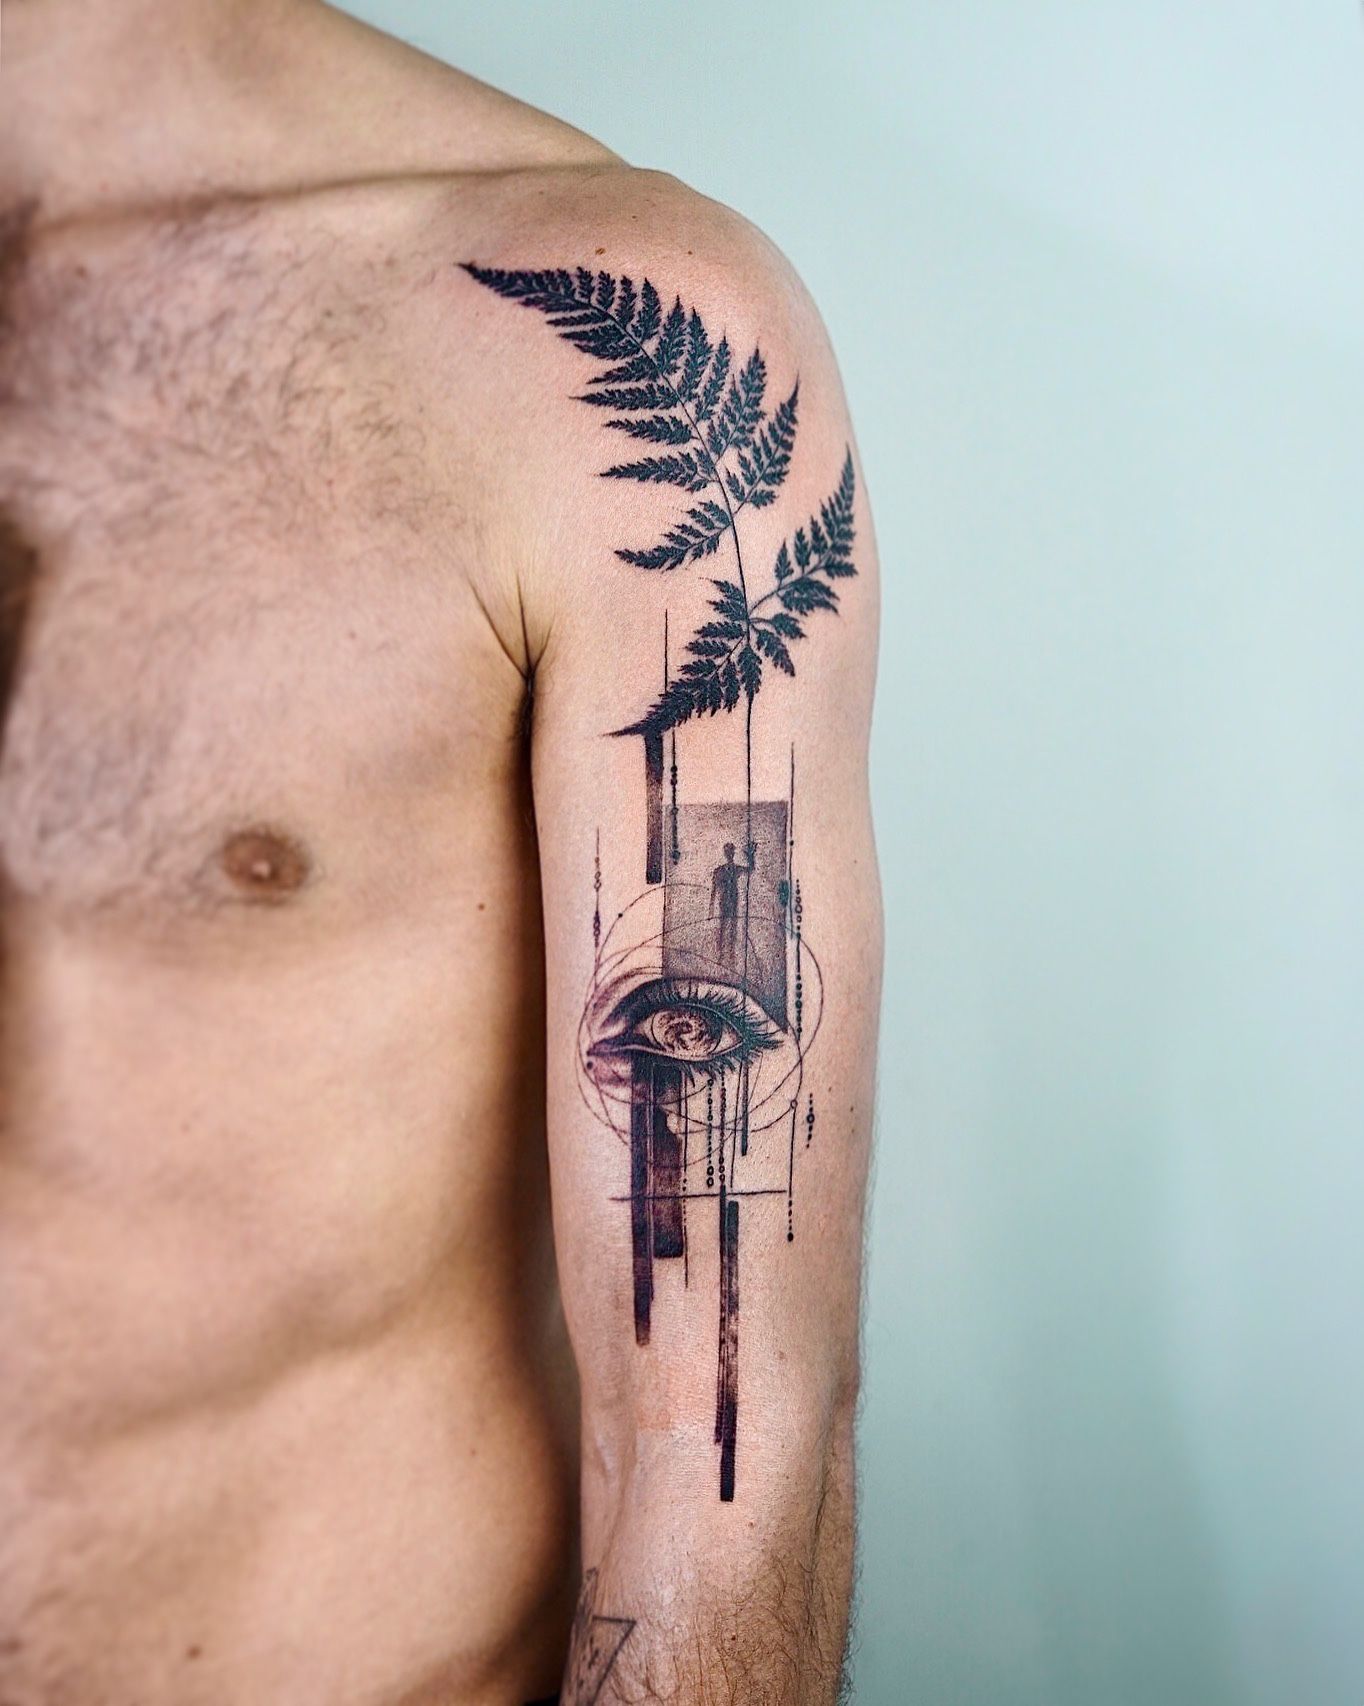 21 Stunning Mountain Tattoo Ideas For Men - Styleoholic